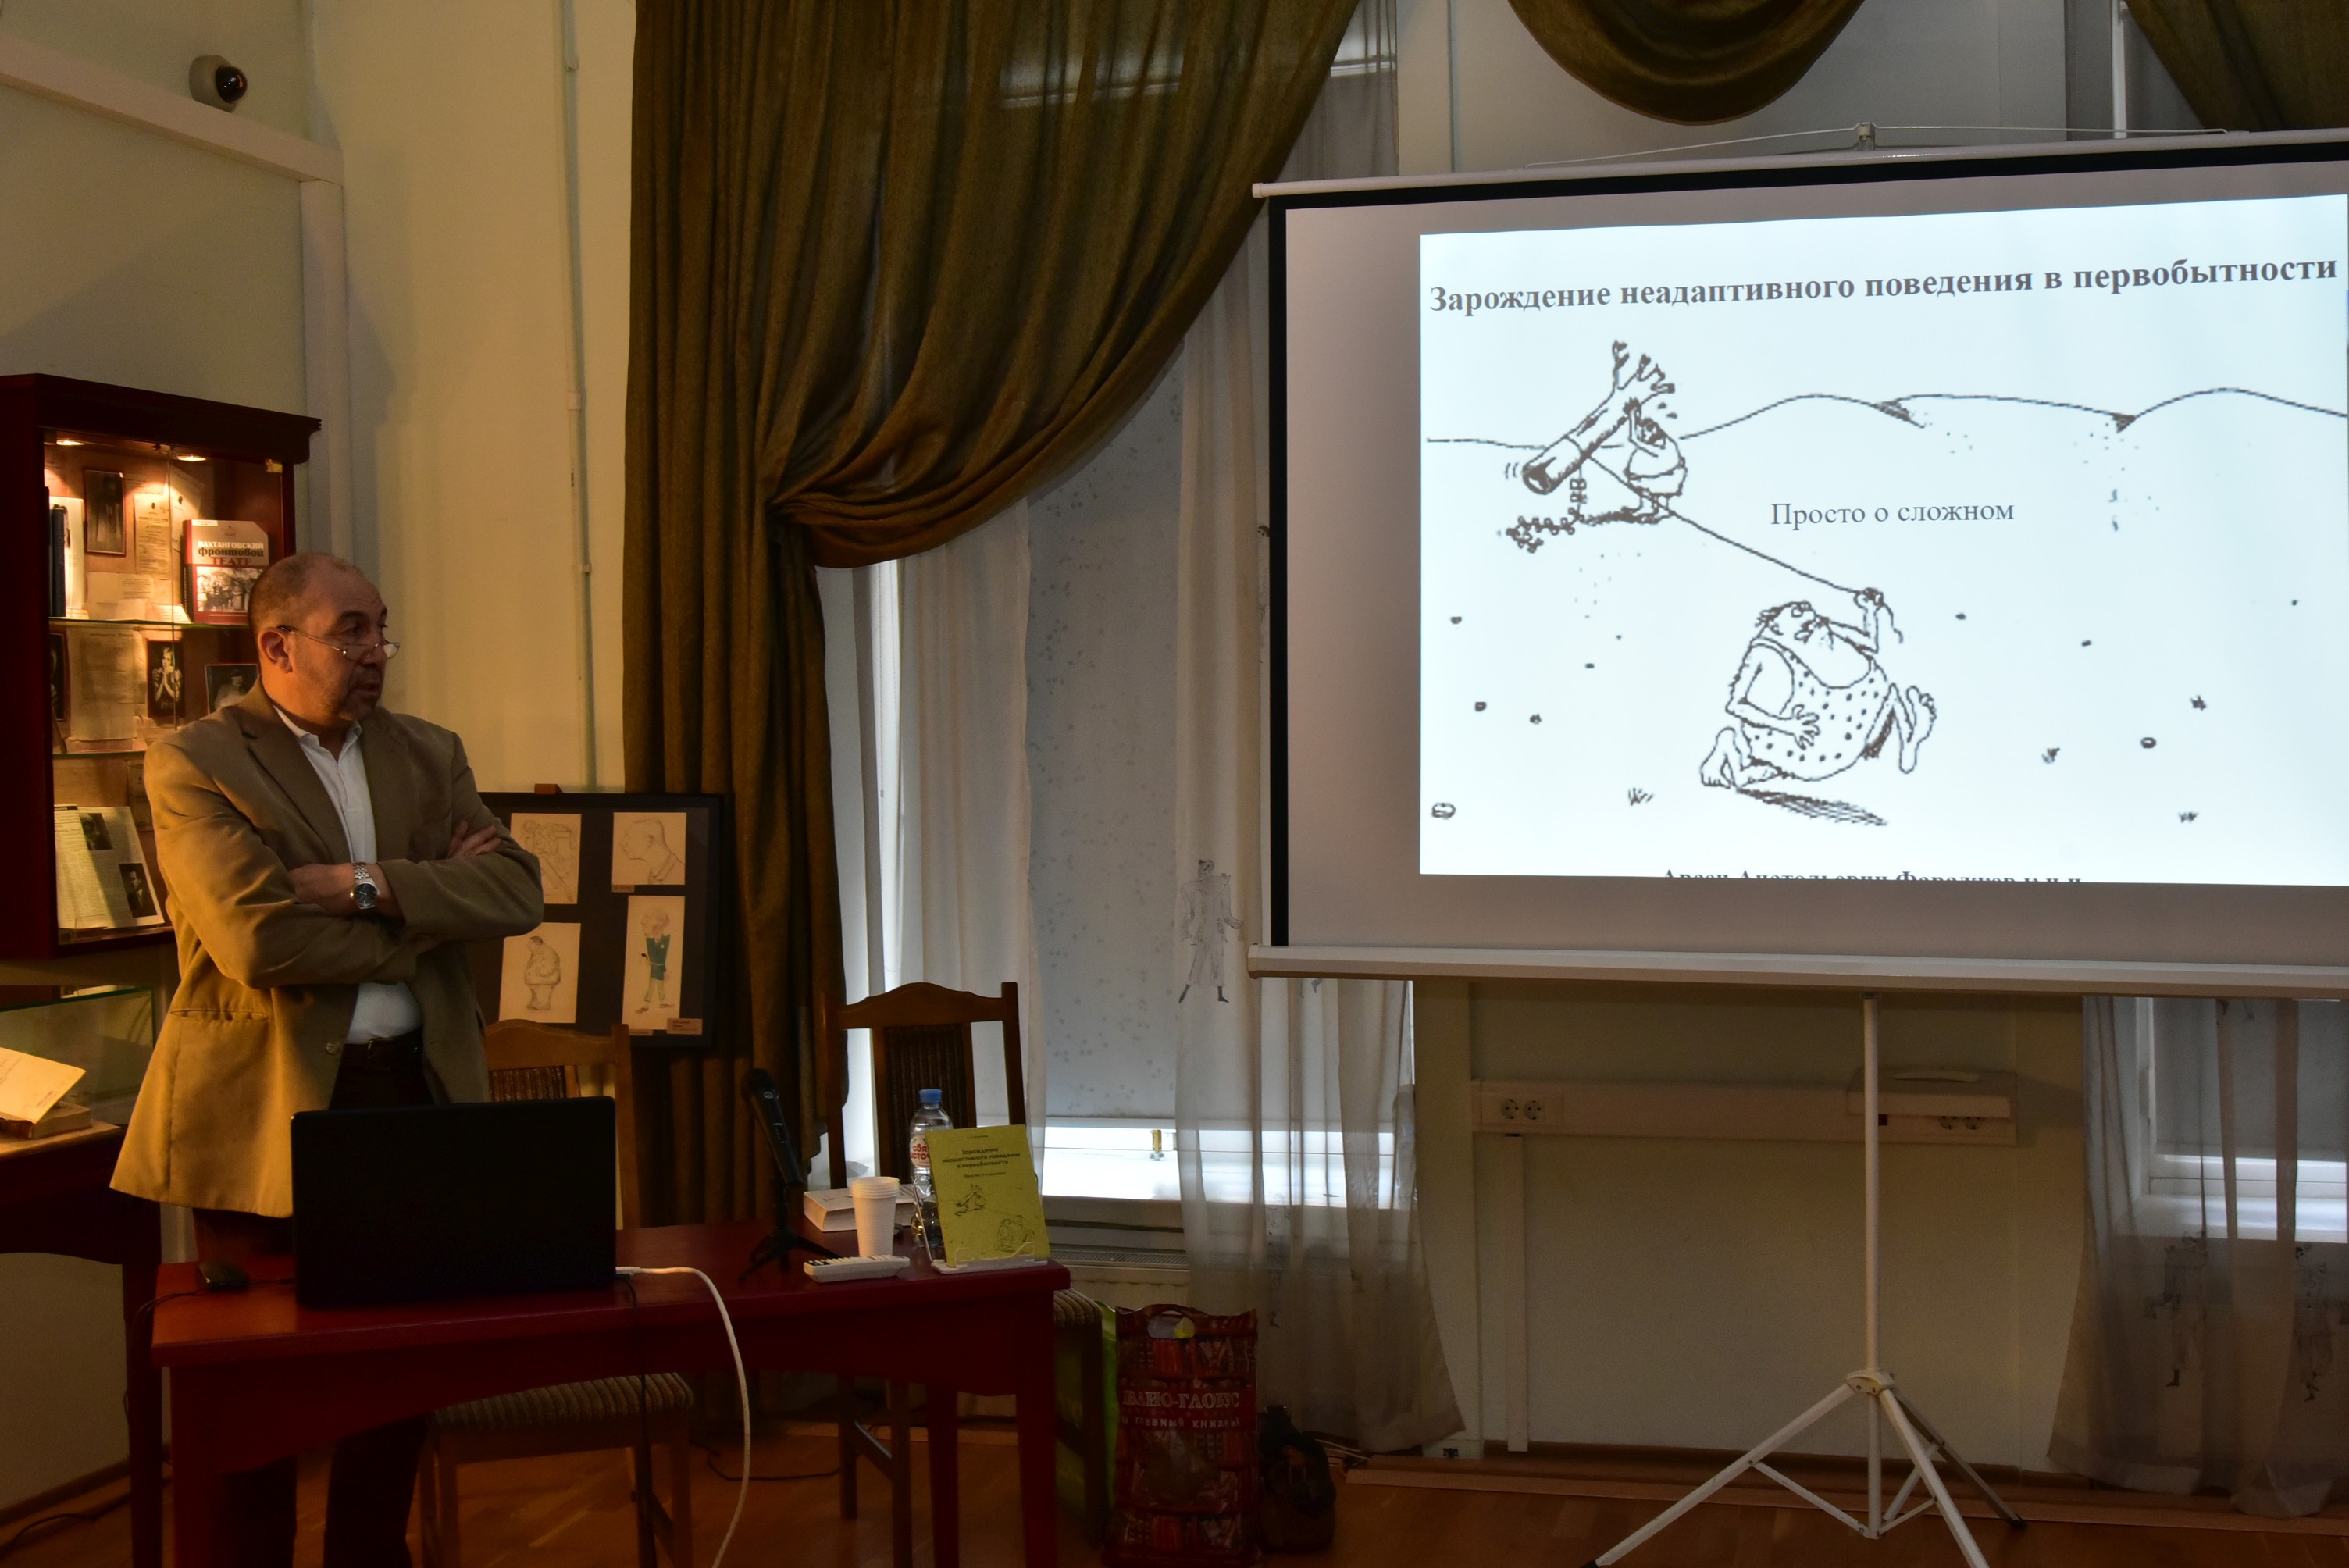 14 апреля в РГБИ состоялась презентация книги Арсена Фараджева «Зарождение неадаптивного поведения в первобытности. Просто о сложном»